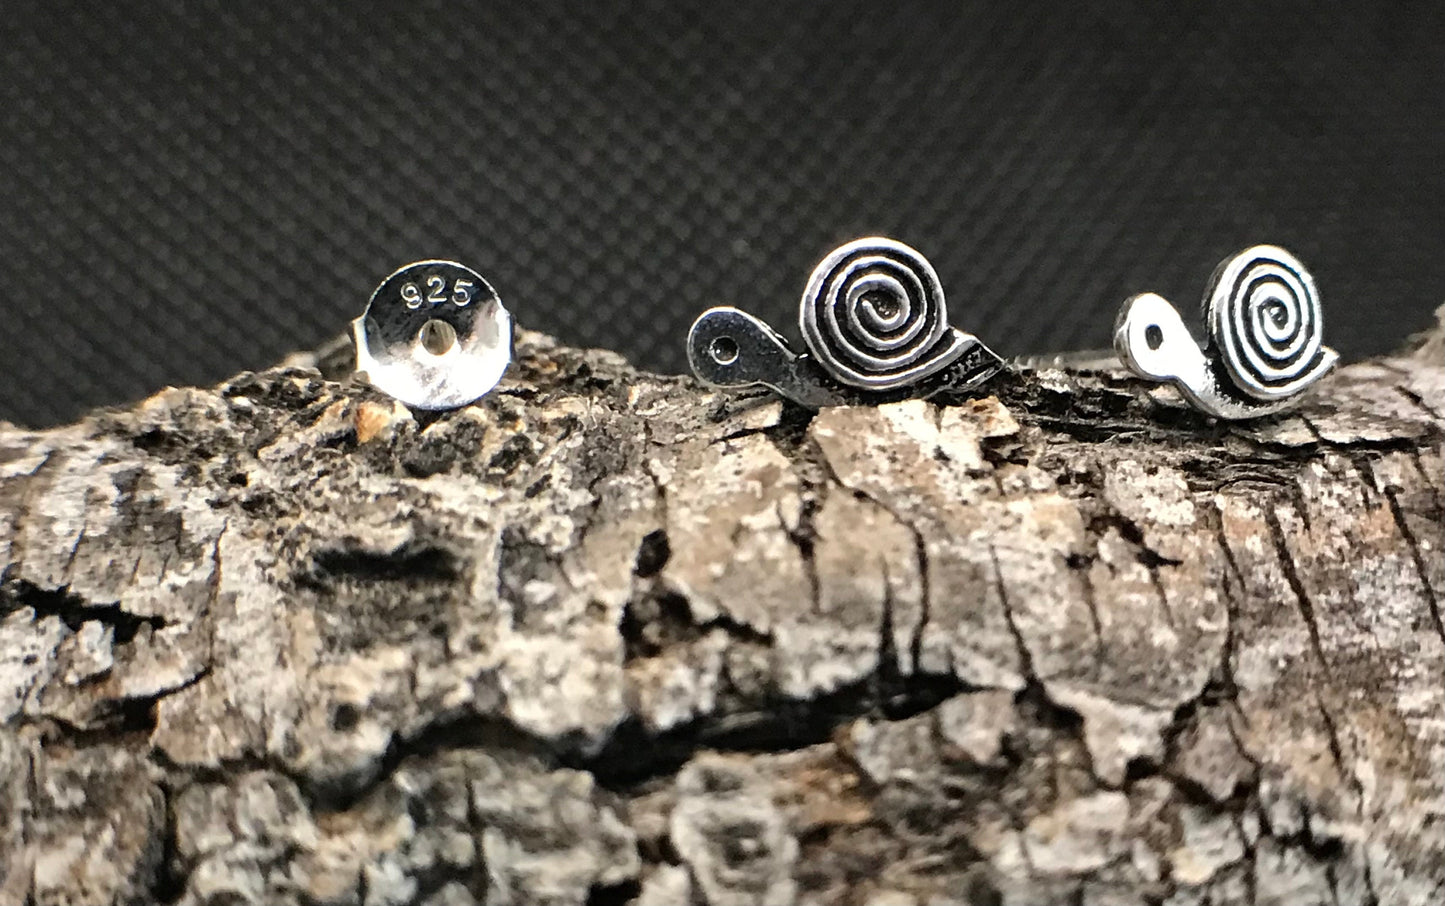 Cute spiral snail earrings Sterling Silver 925 - TSE025